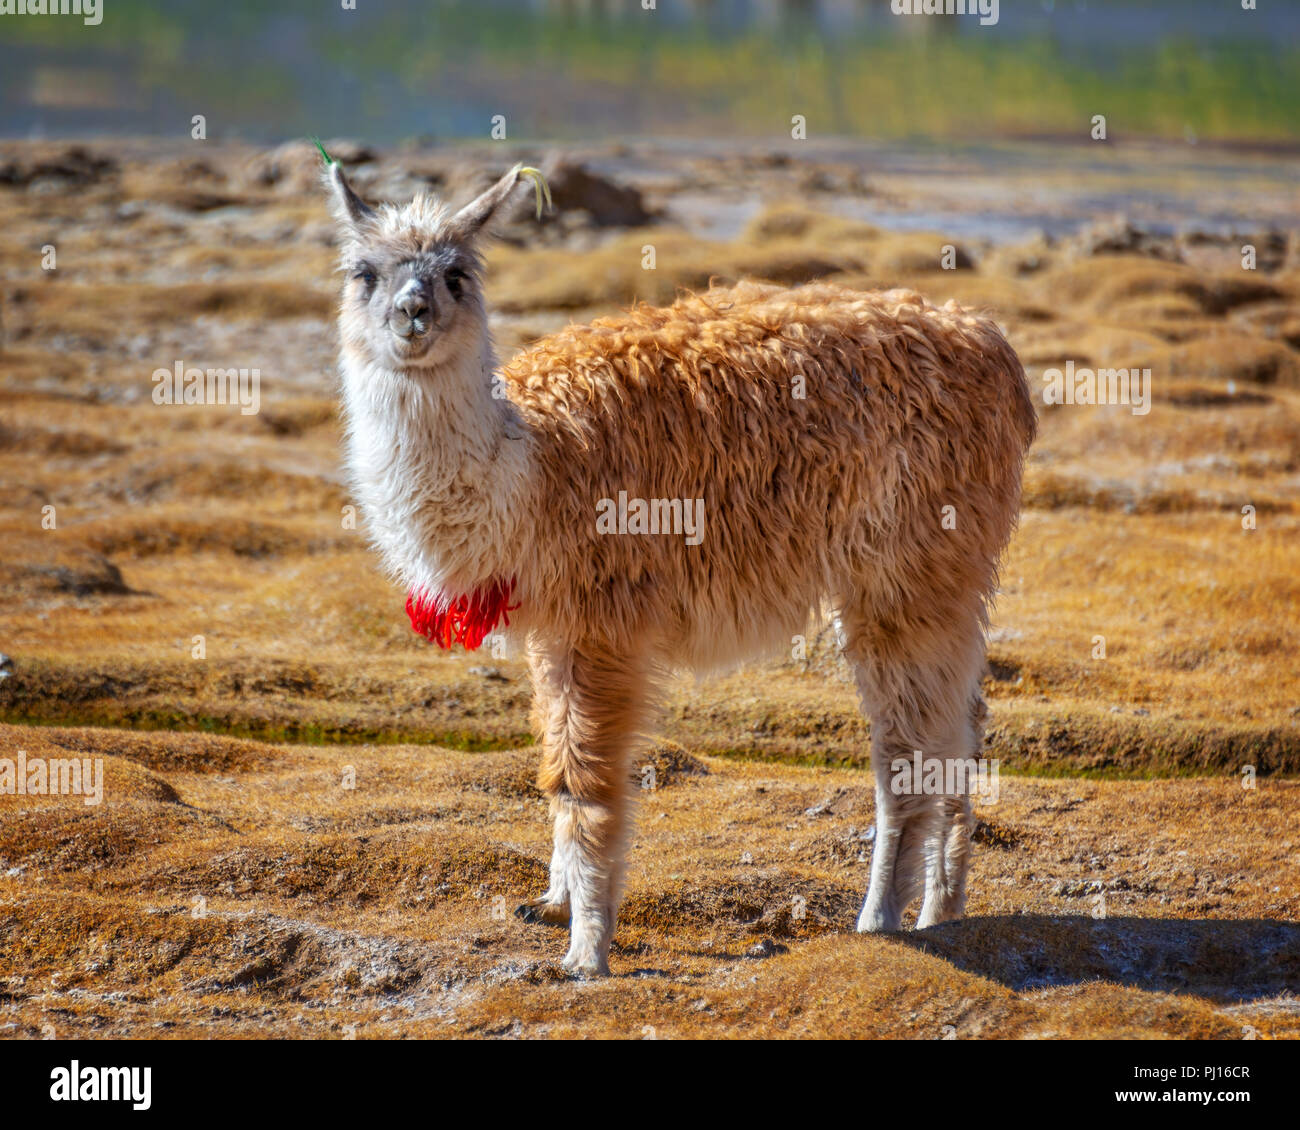 Portrait d'un lama regardant la caméra en Bolivie, Amérique du Sud Banque D'Images